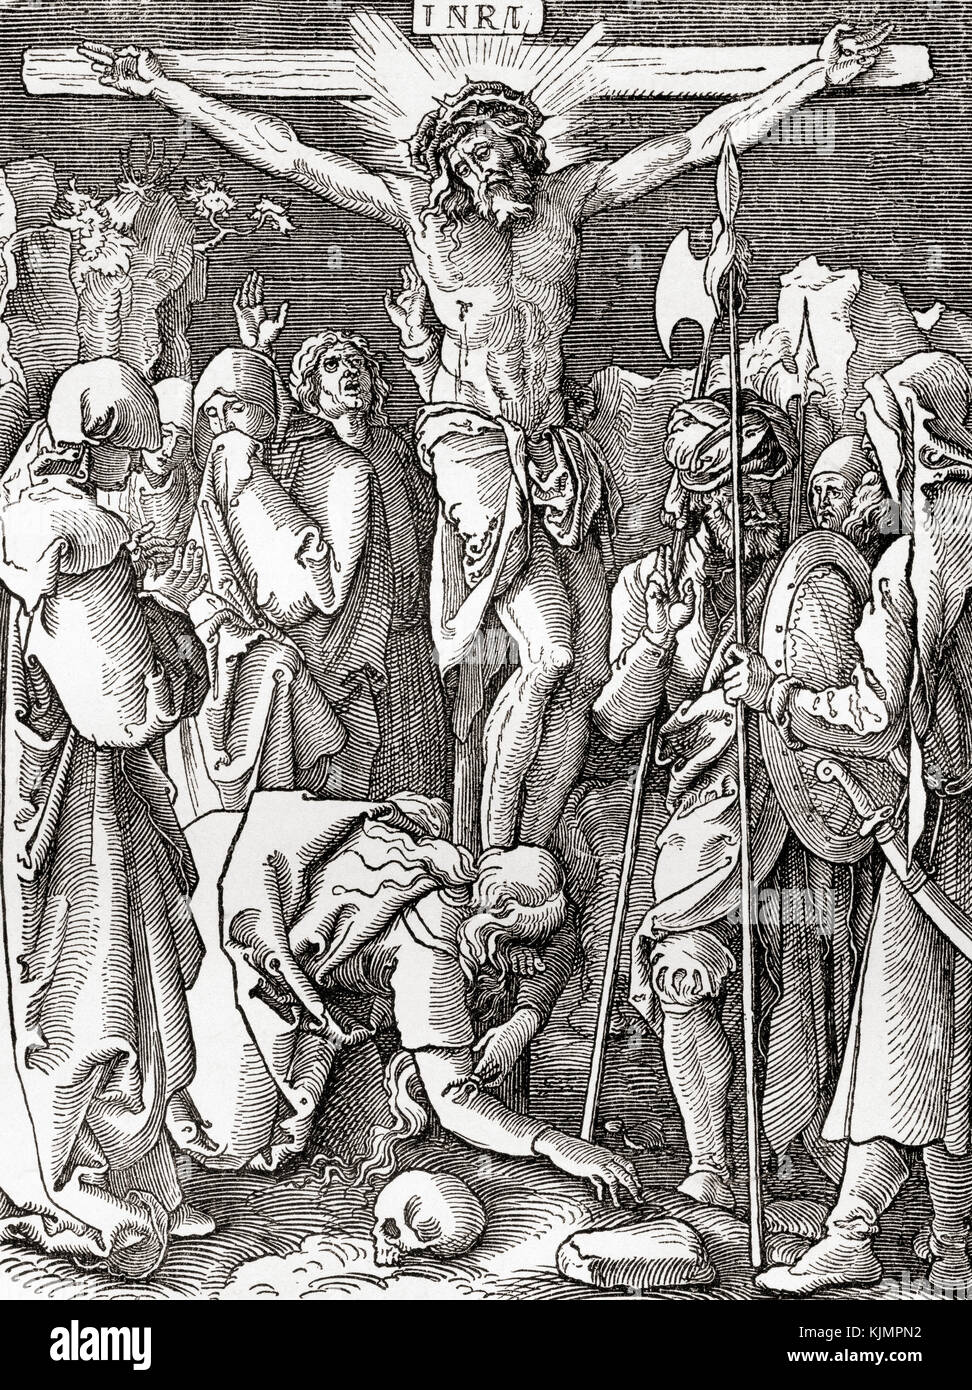 La Crucifixion d'après un imprimé d'Albrecht Dürer. De l'Histoire illustrée du monde de Ward et Lock, publié vers 1882. Banque D'Images